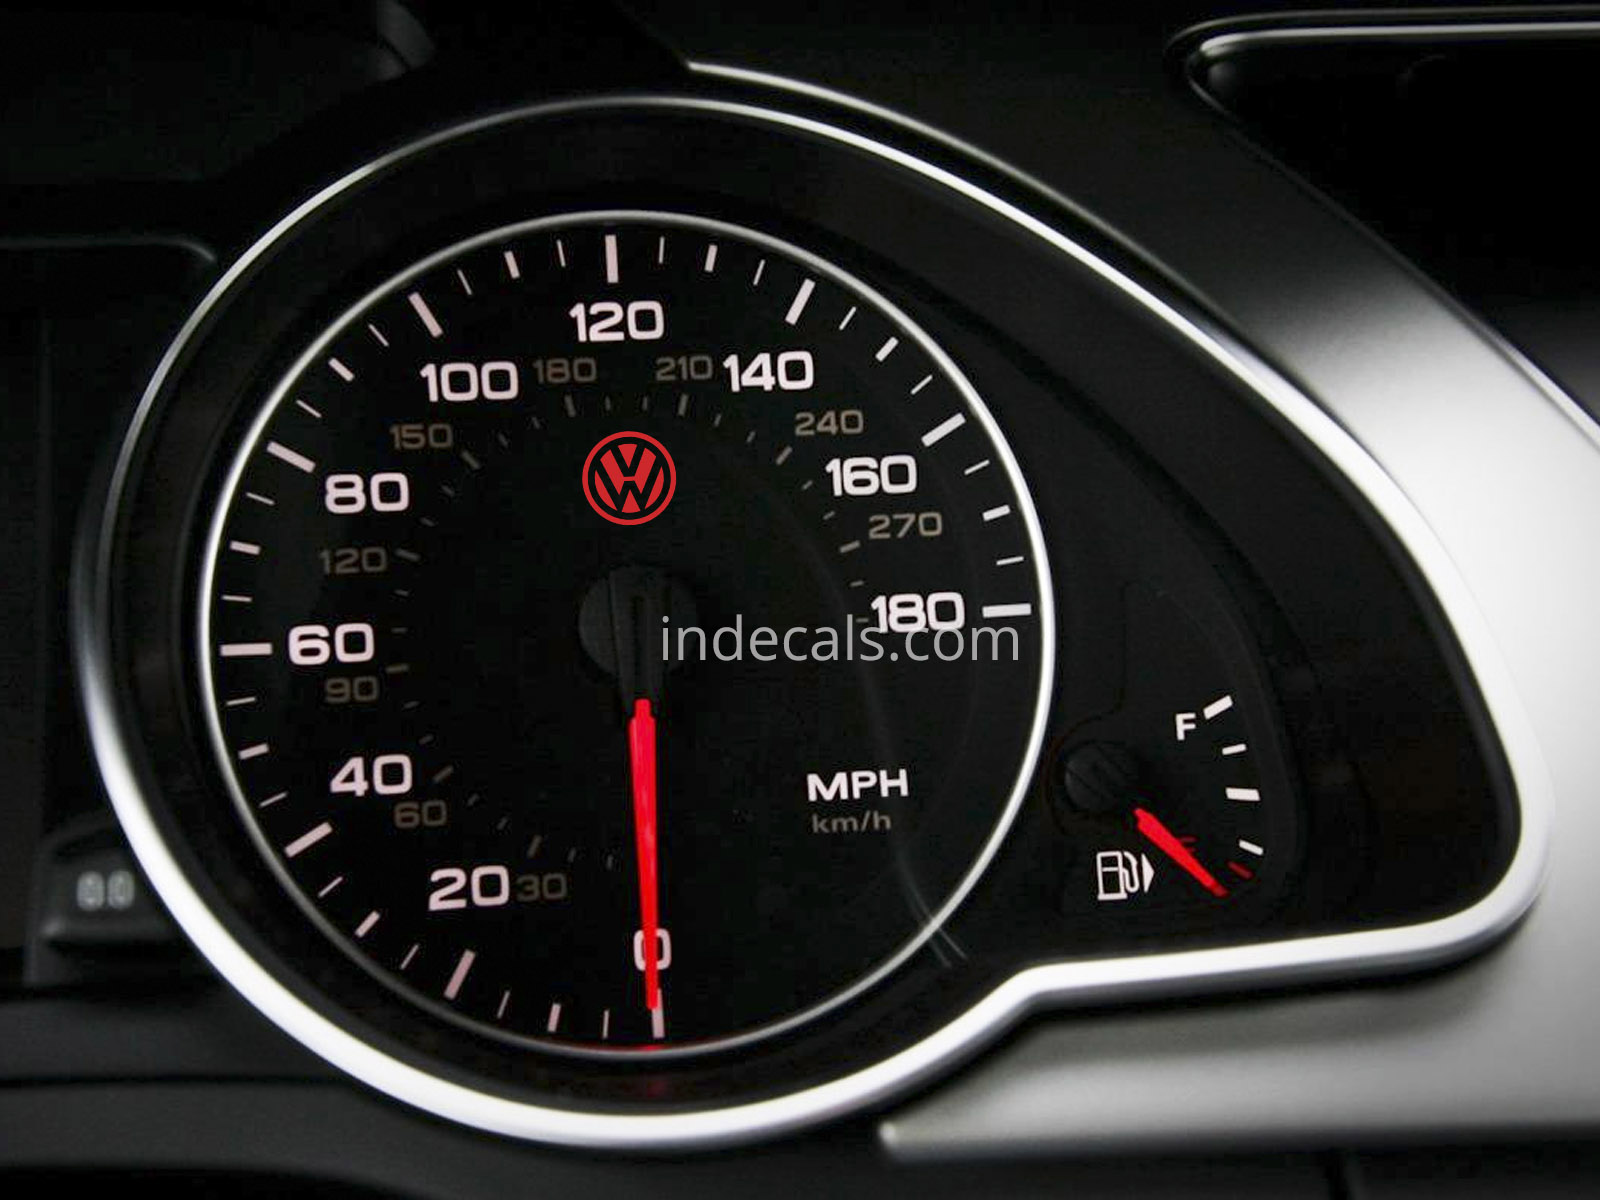 3 x Volkswagen Stickers for Speedometer - Red